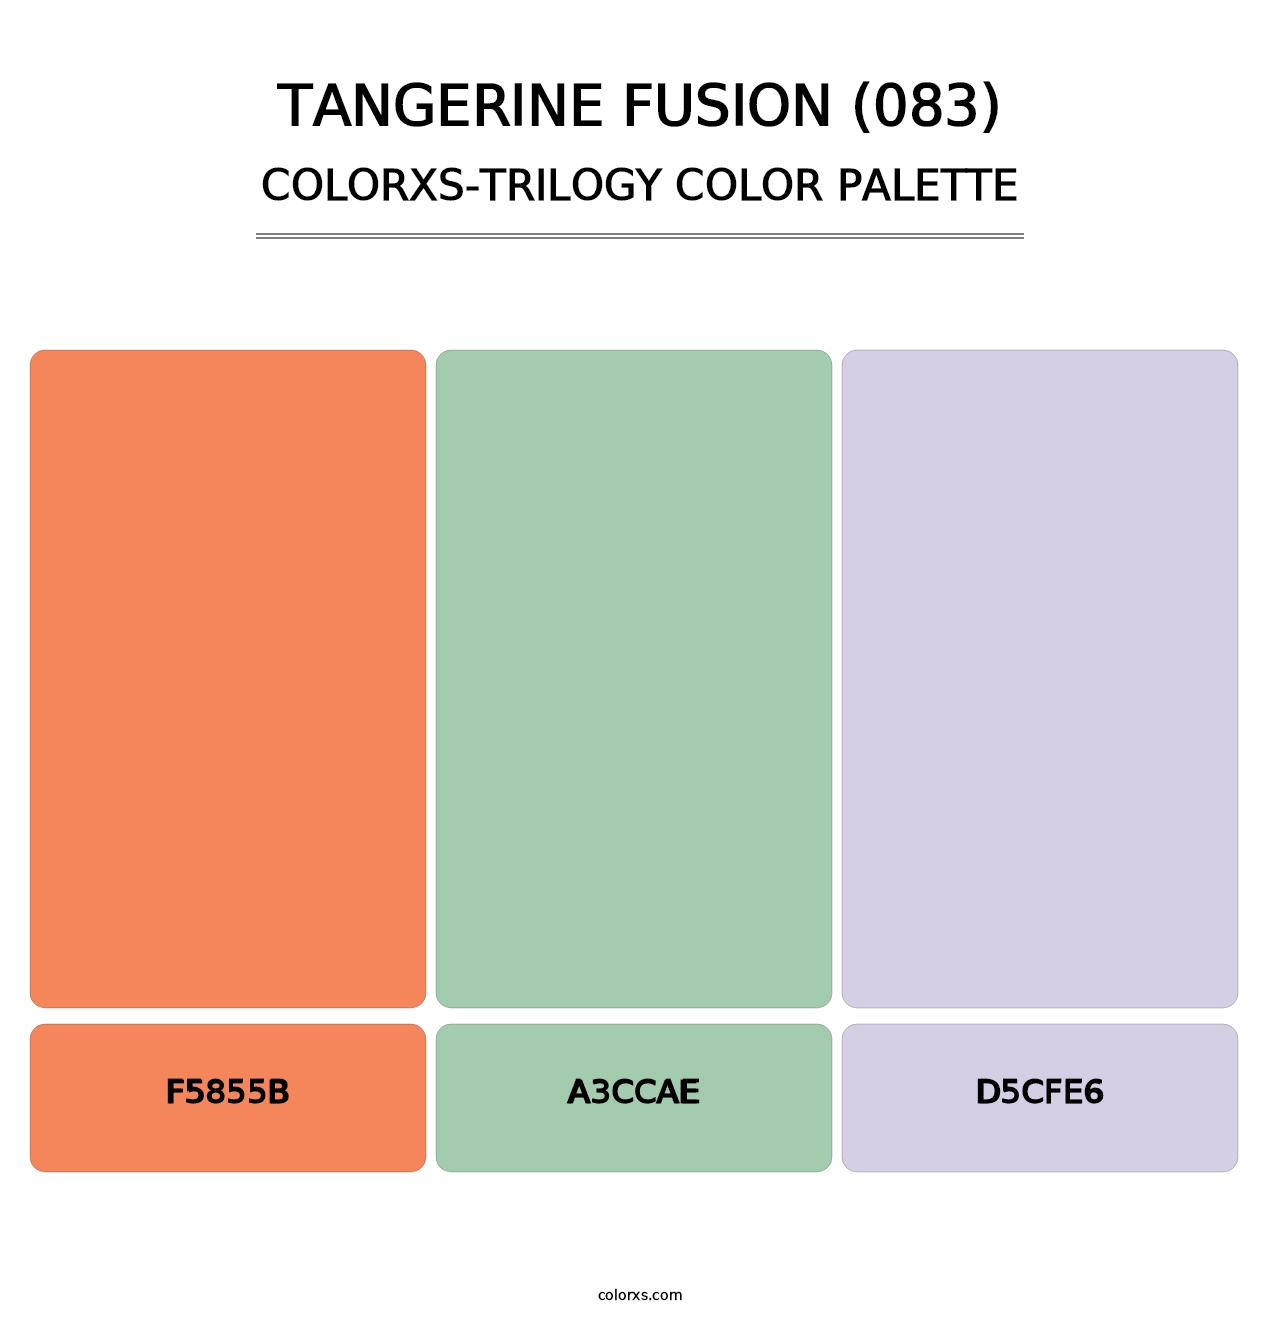 Tangerine Fusion (083) - Colorxs Trilogy Palette